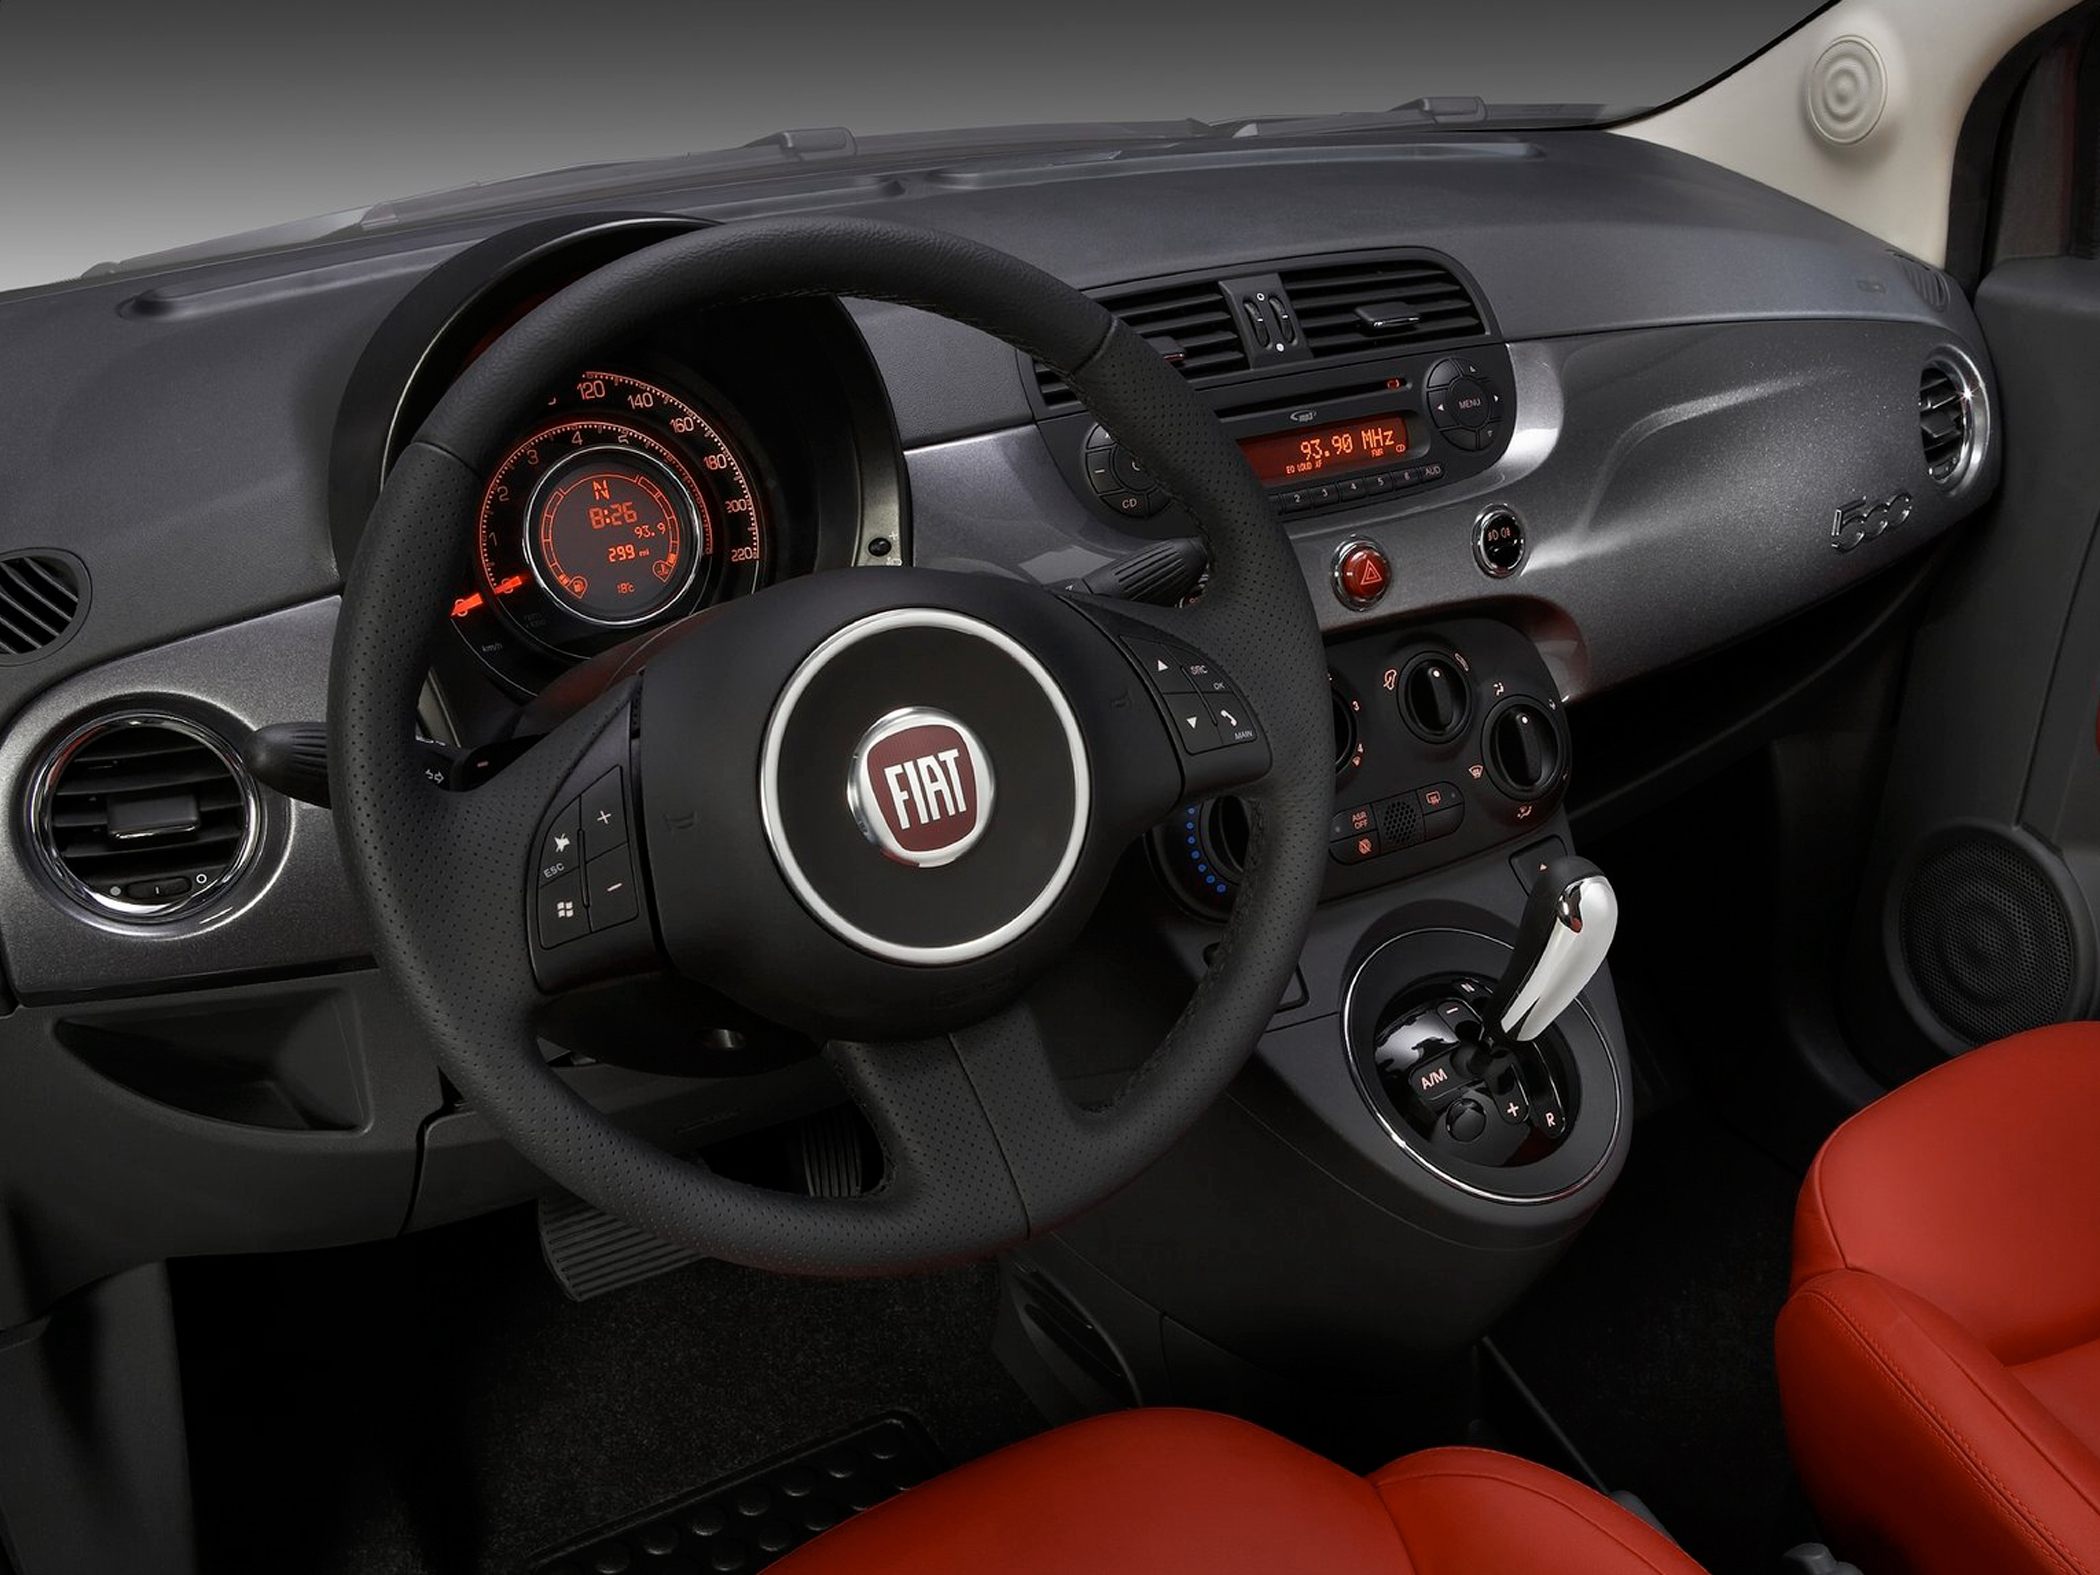 Fiat 2013 500 Hottest Hatchback designed for car enthusiasts #8